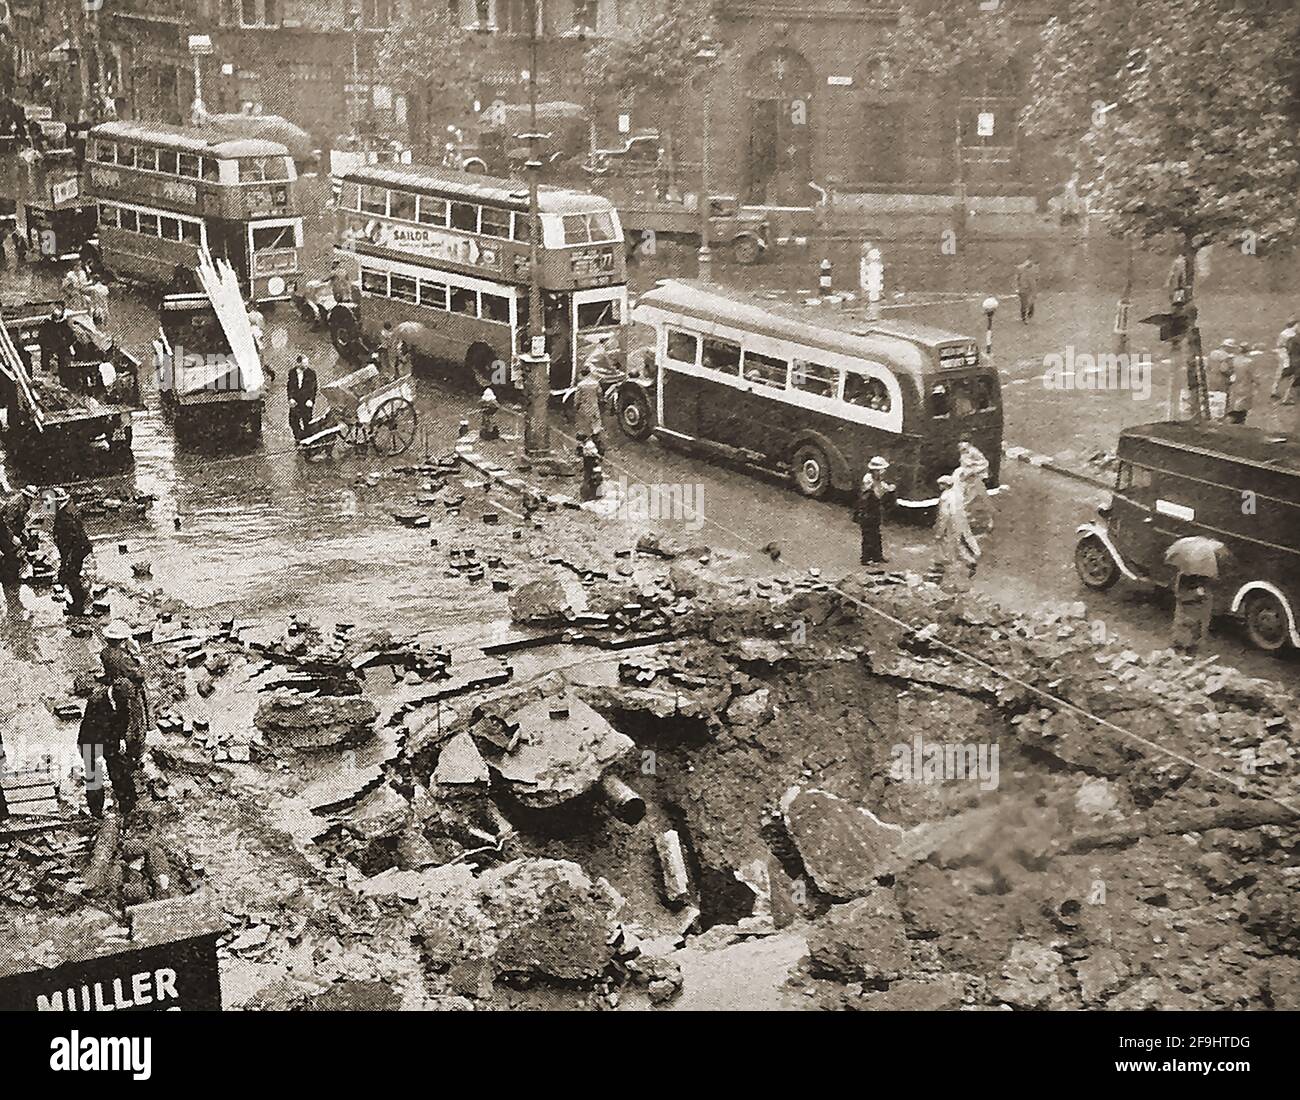 Seconda guerra mondiale - bombardamenti tedeschi su Londra, Regno Unito (Blitz) nel settembre 1940 - gli autobus vintage di Londra passano davanti a un cratere di bomba nello Strand. Foto Stock